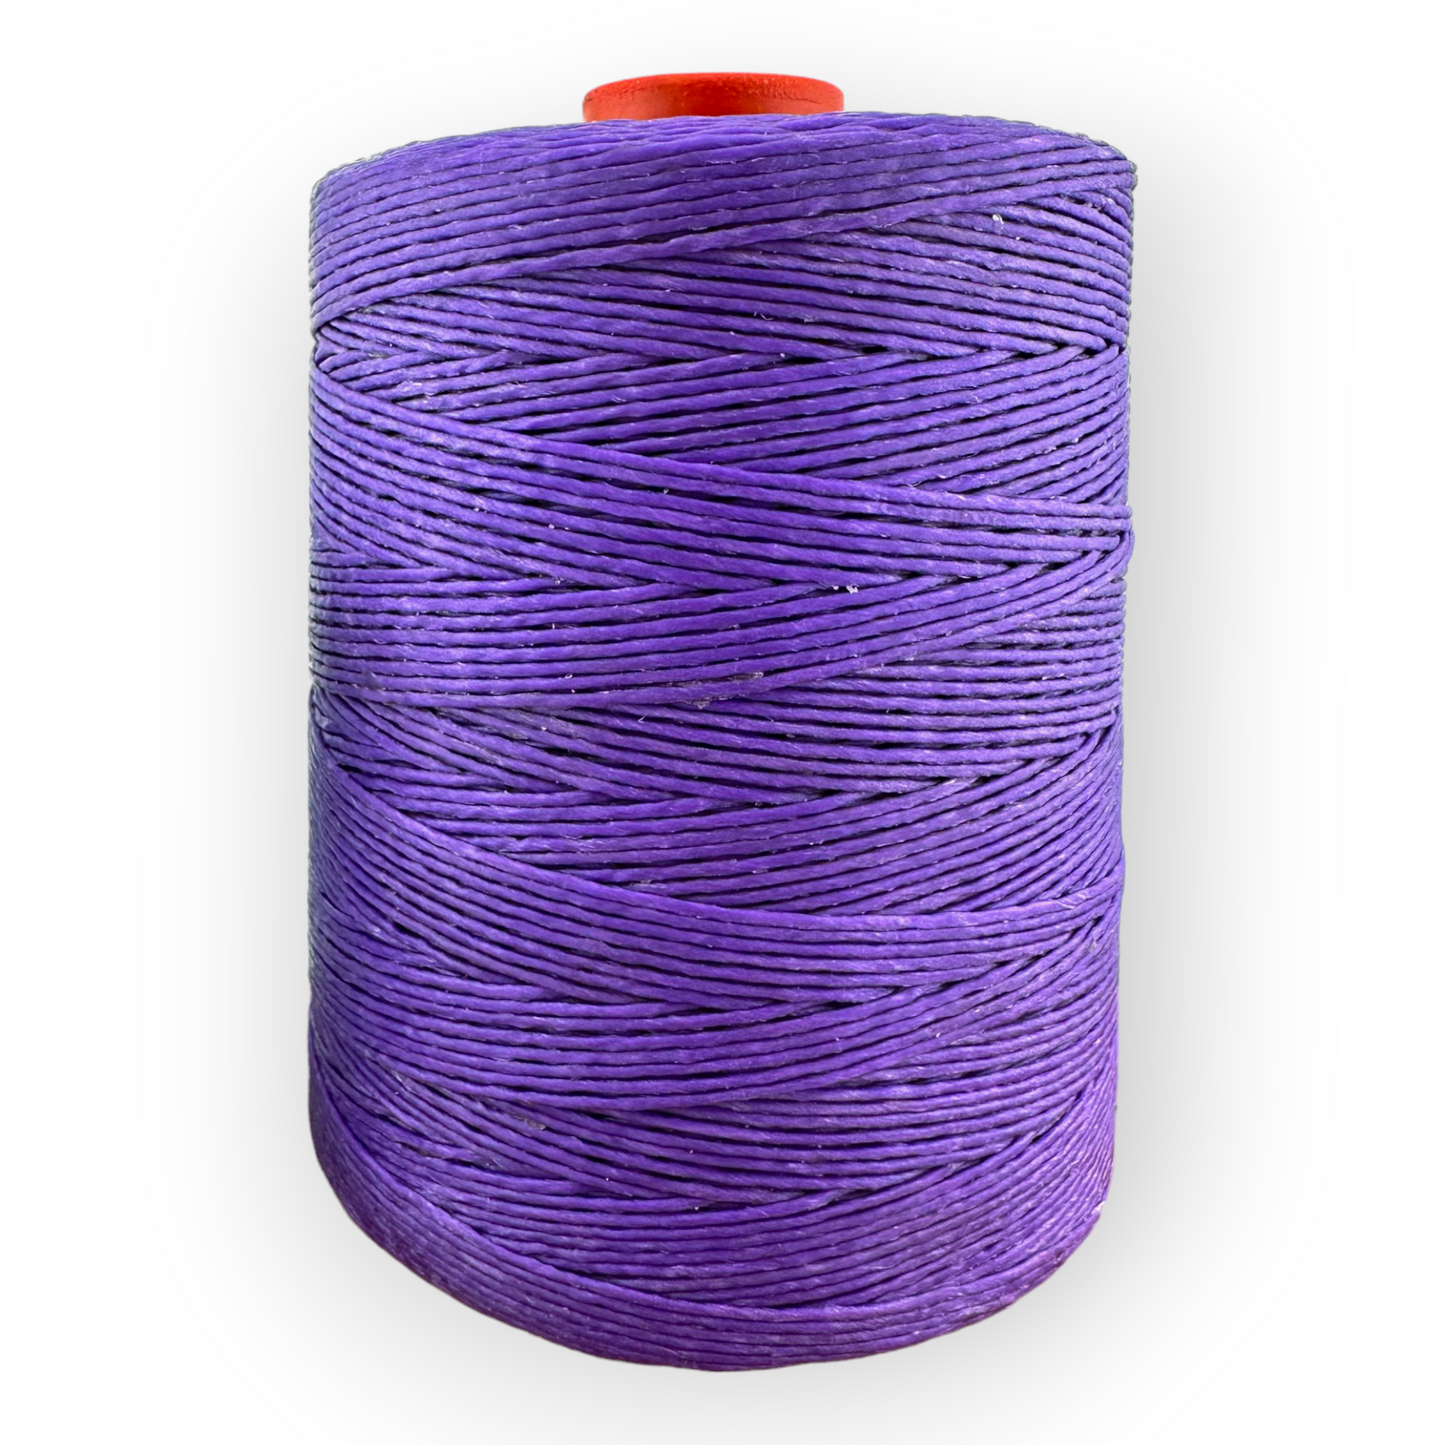 600 Meter Macrame Cord Spool - Dark Purple